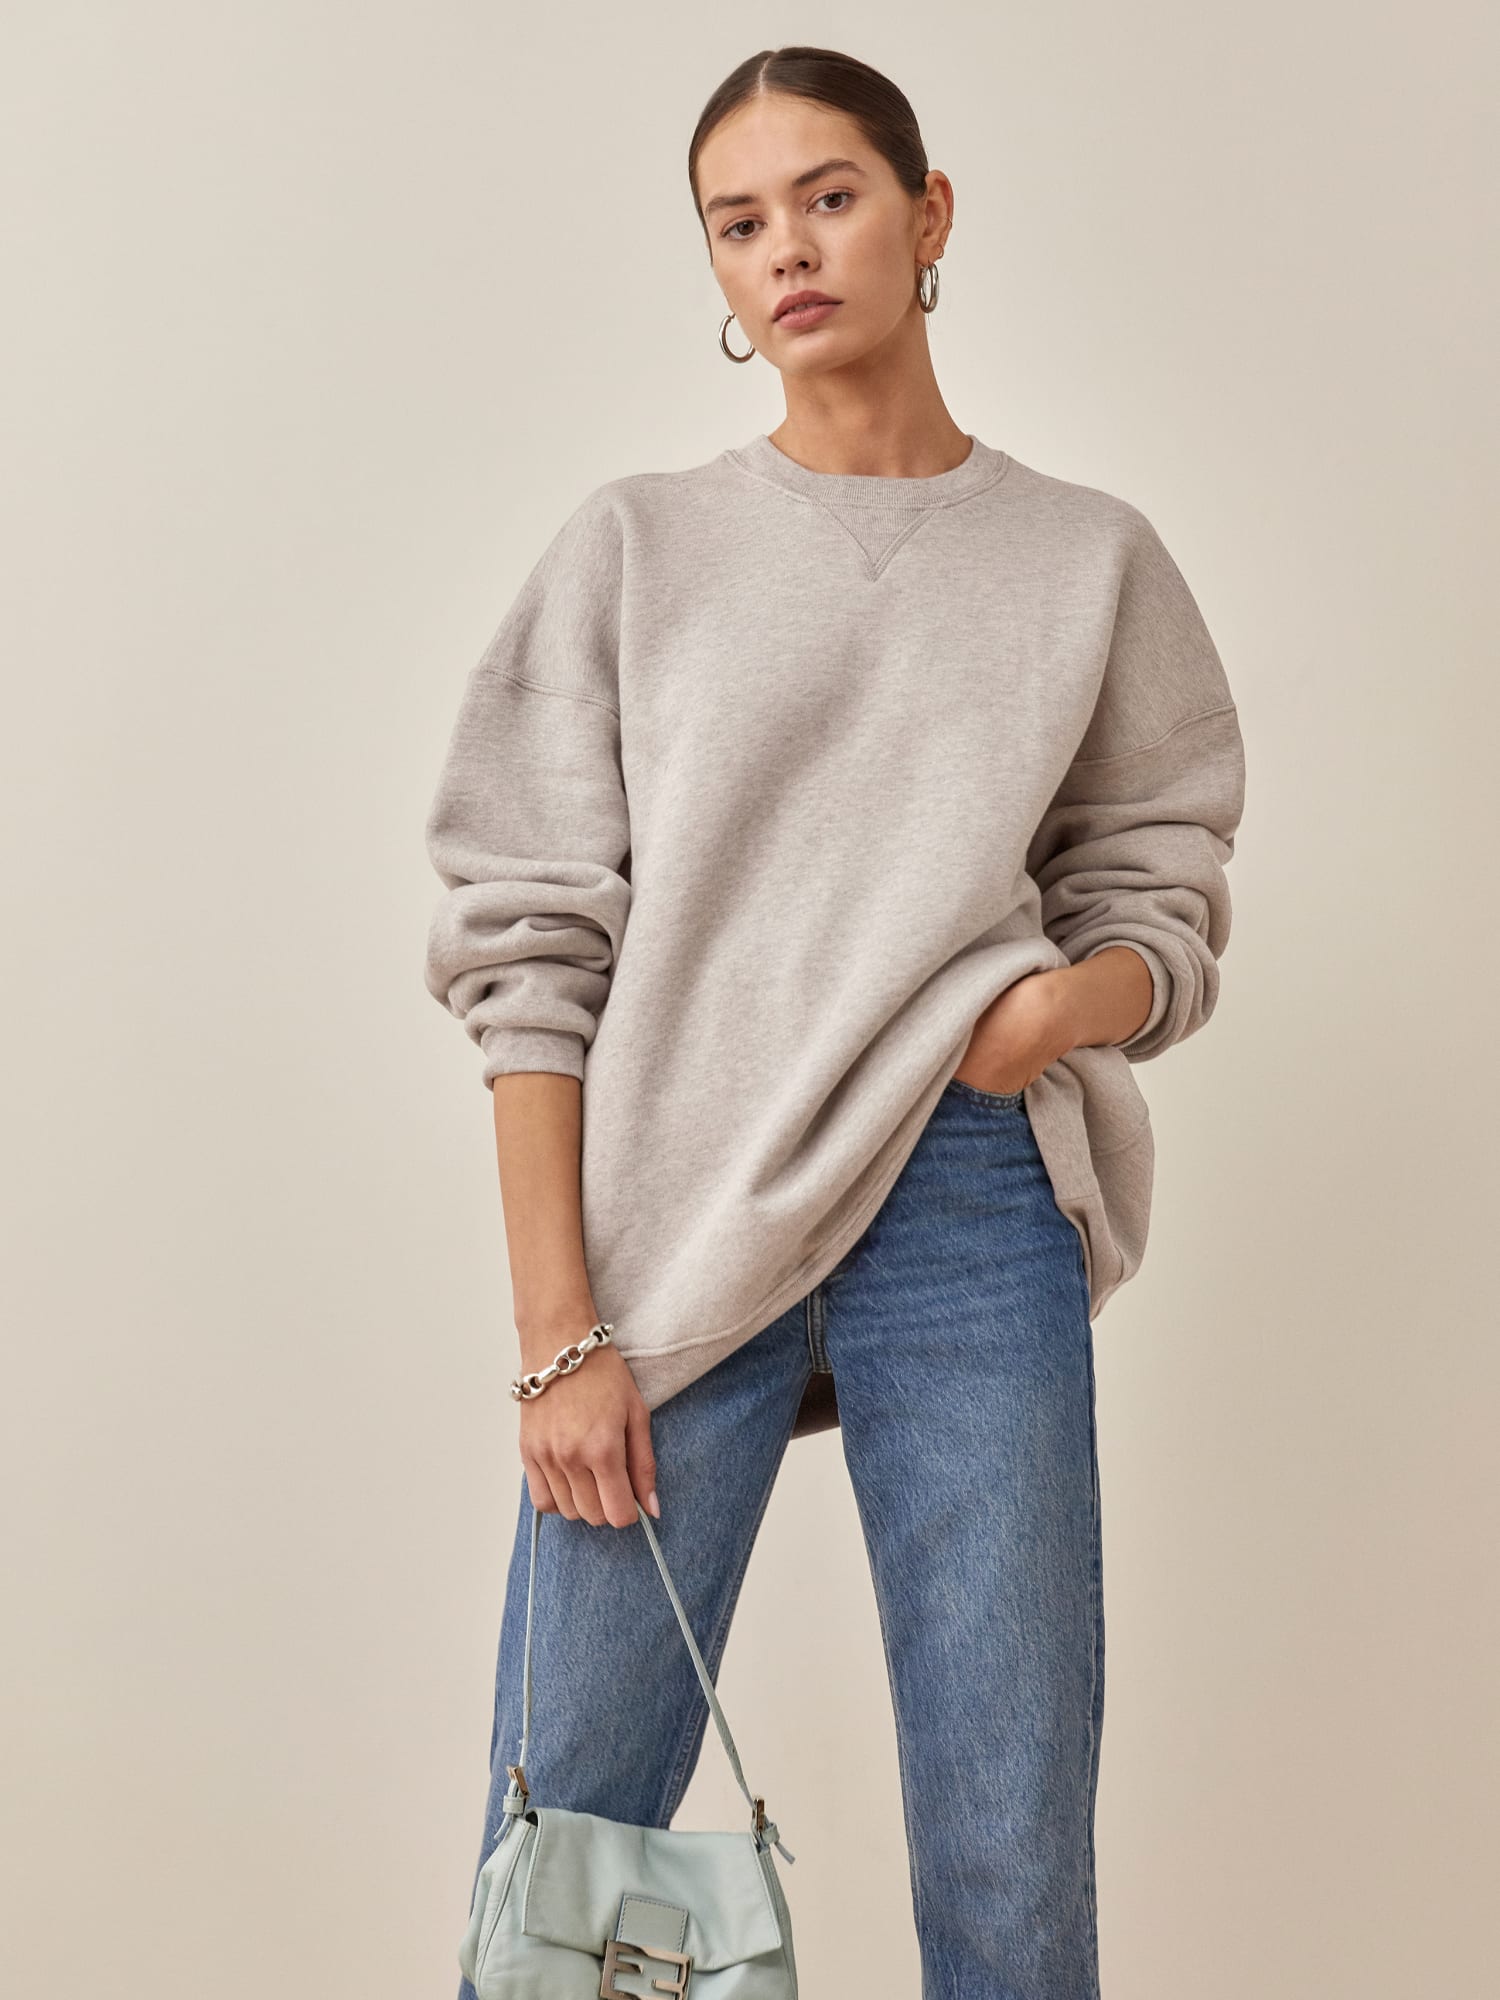 Women's Bluey Graphic Sweatshirt - Gray XS